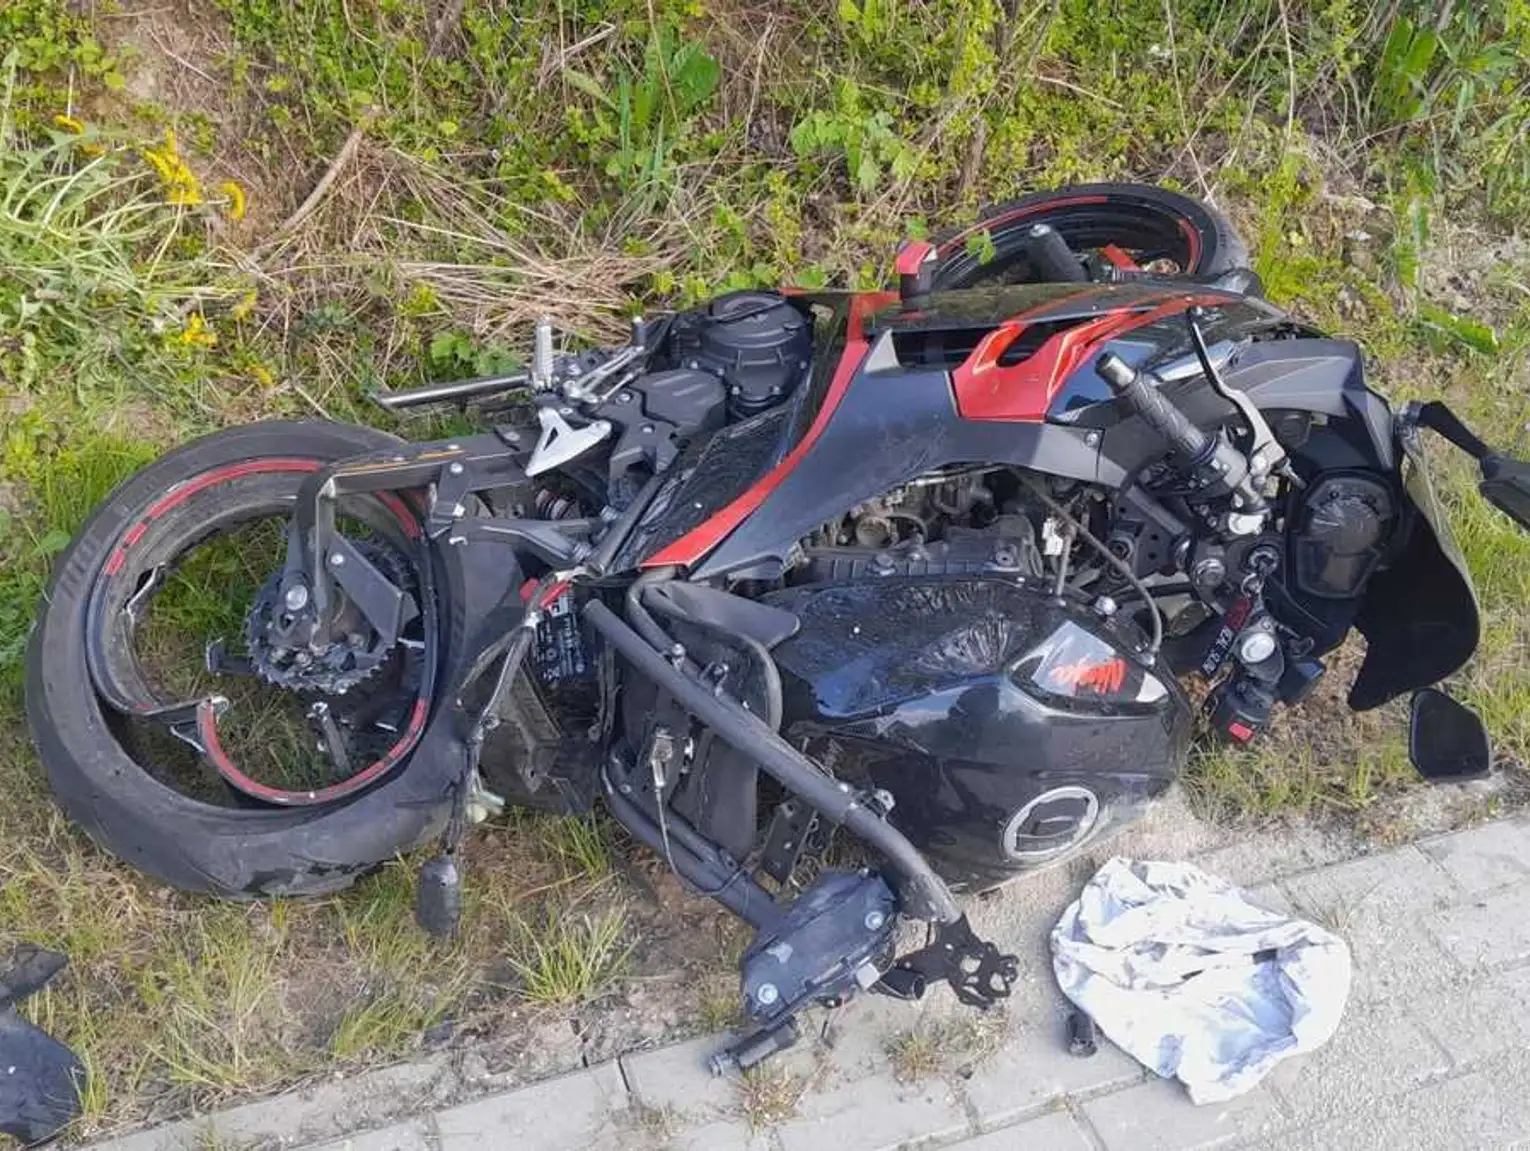 Śmiertelny wypadek motocyklisty. Zderzył się z toyotą